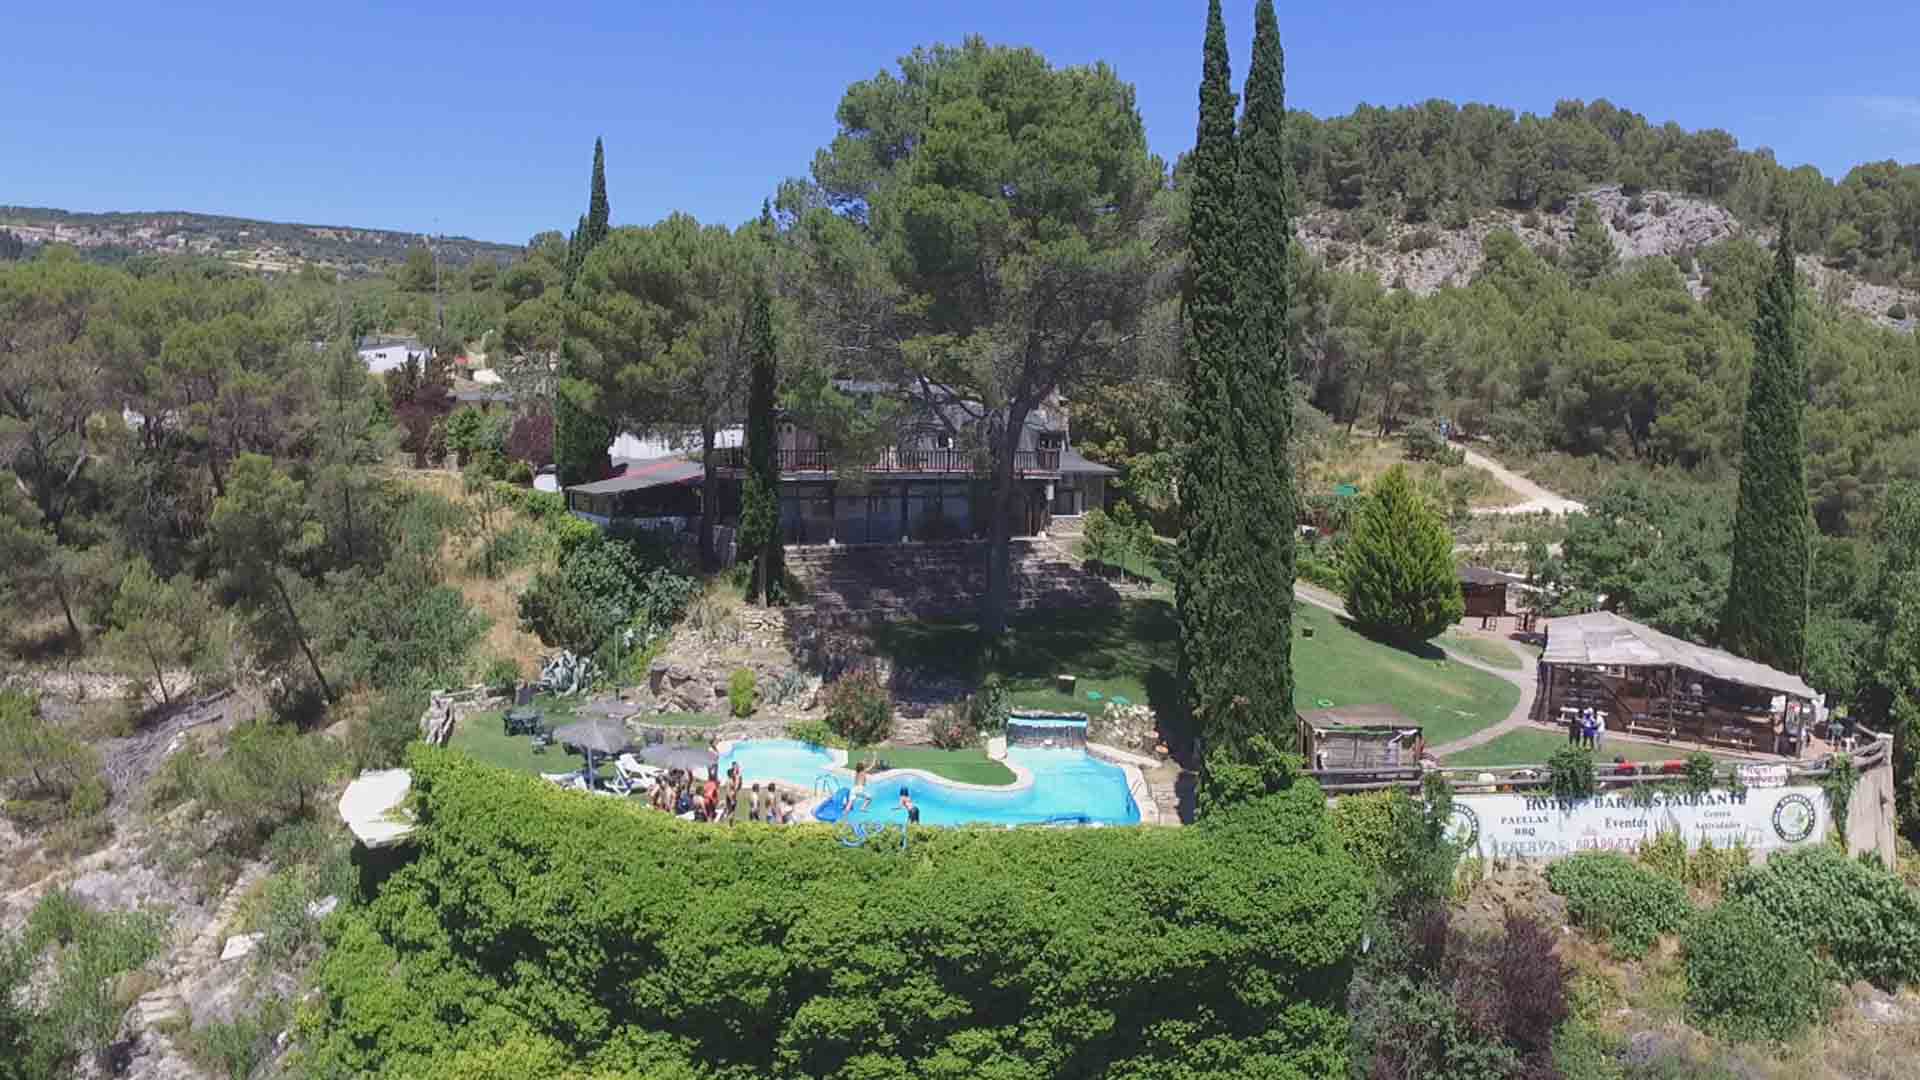 Hotel pantano vacacions familiares, eventos, cumpleaños, piscina